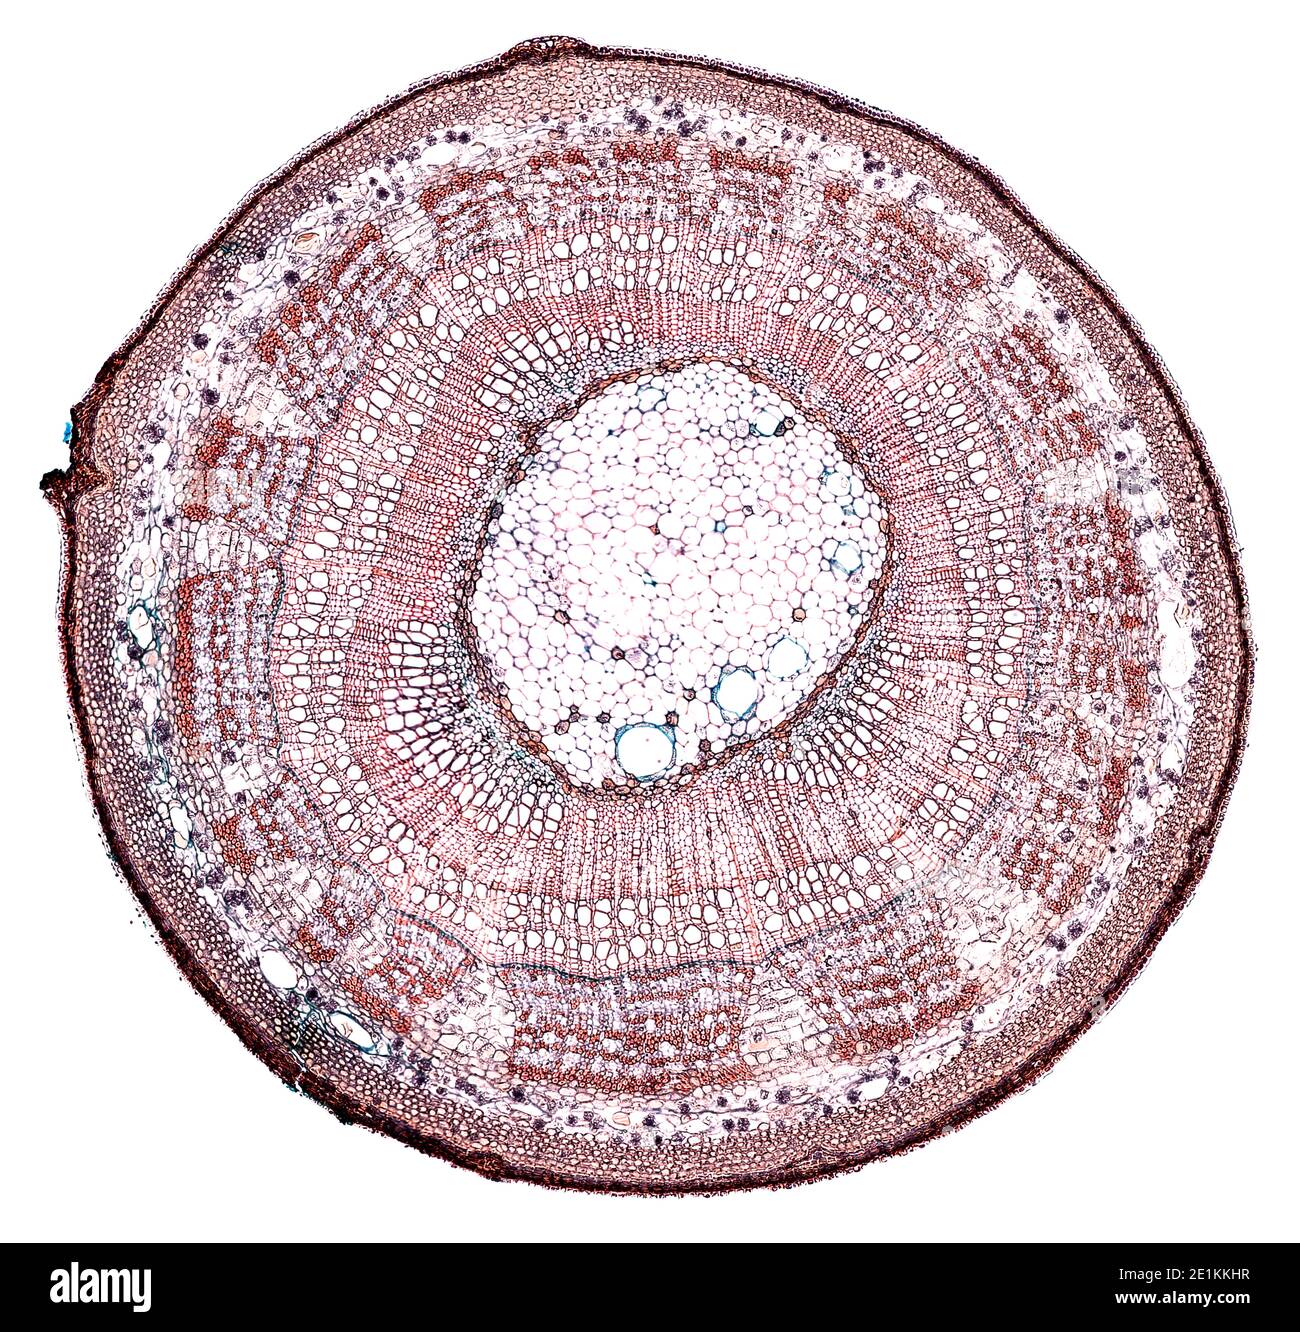 Querschnitt unter dem Mikroskop geschnitten – mikroskopische Ansicht von Pflanzenzellen für die botanische Erziehung Stockfoto